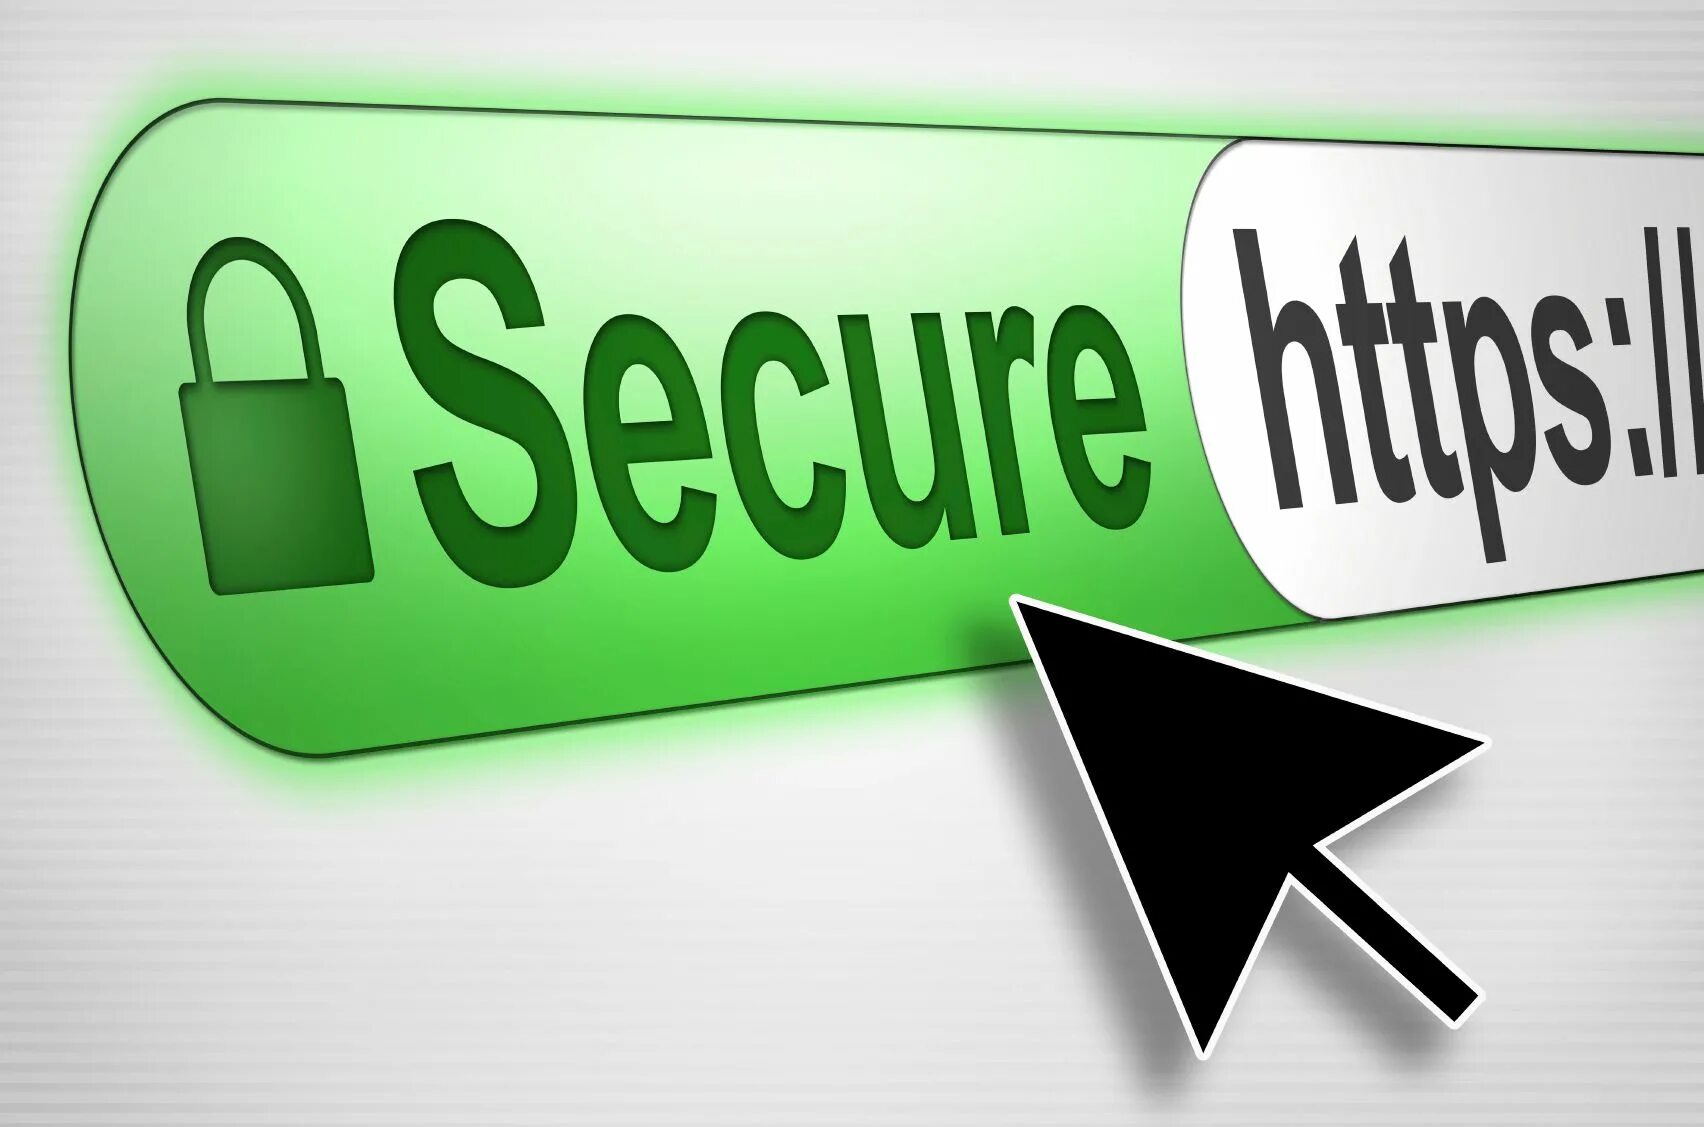 Https your. SSL сертификат. Защищено SSL. SSL картинка. SSL сертификат картинки.